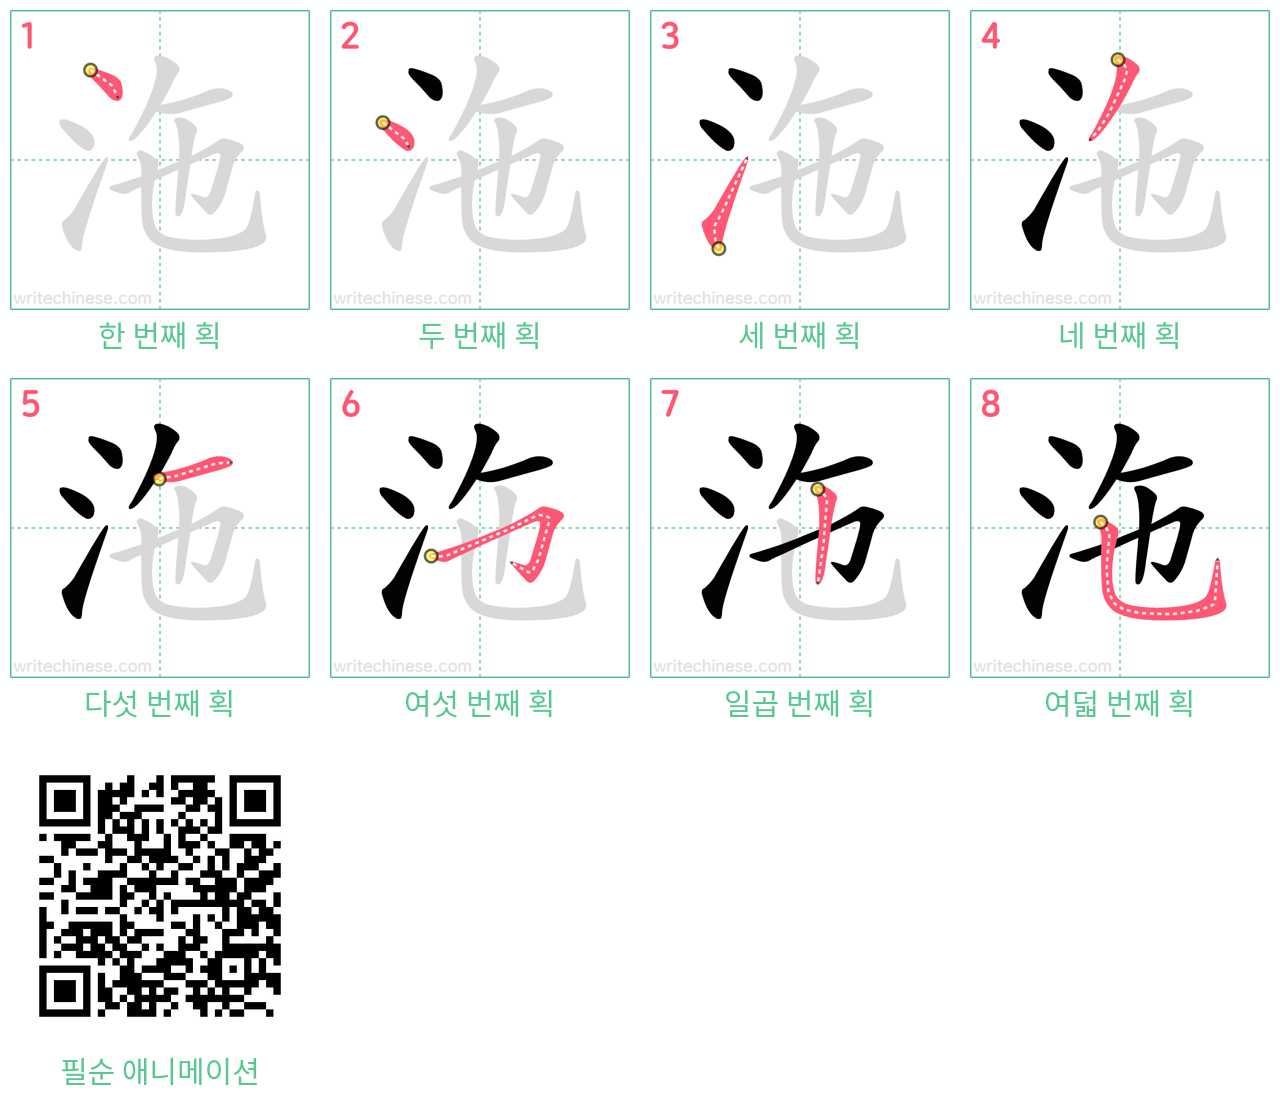 沲 step-by-step stroke order diagrams